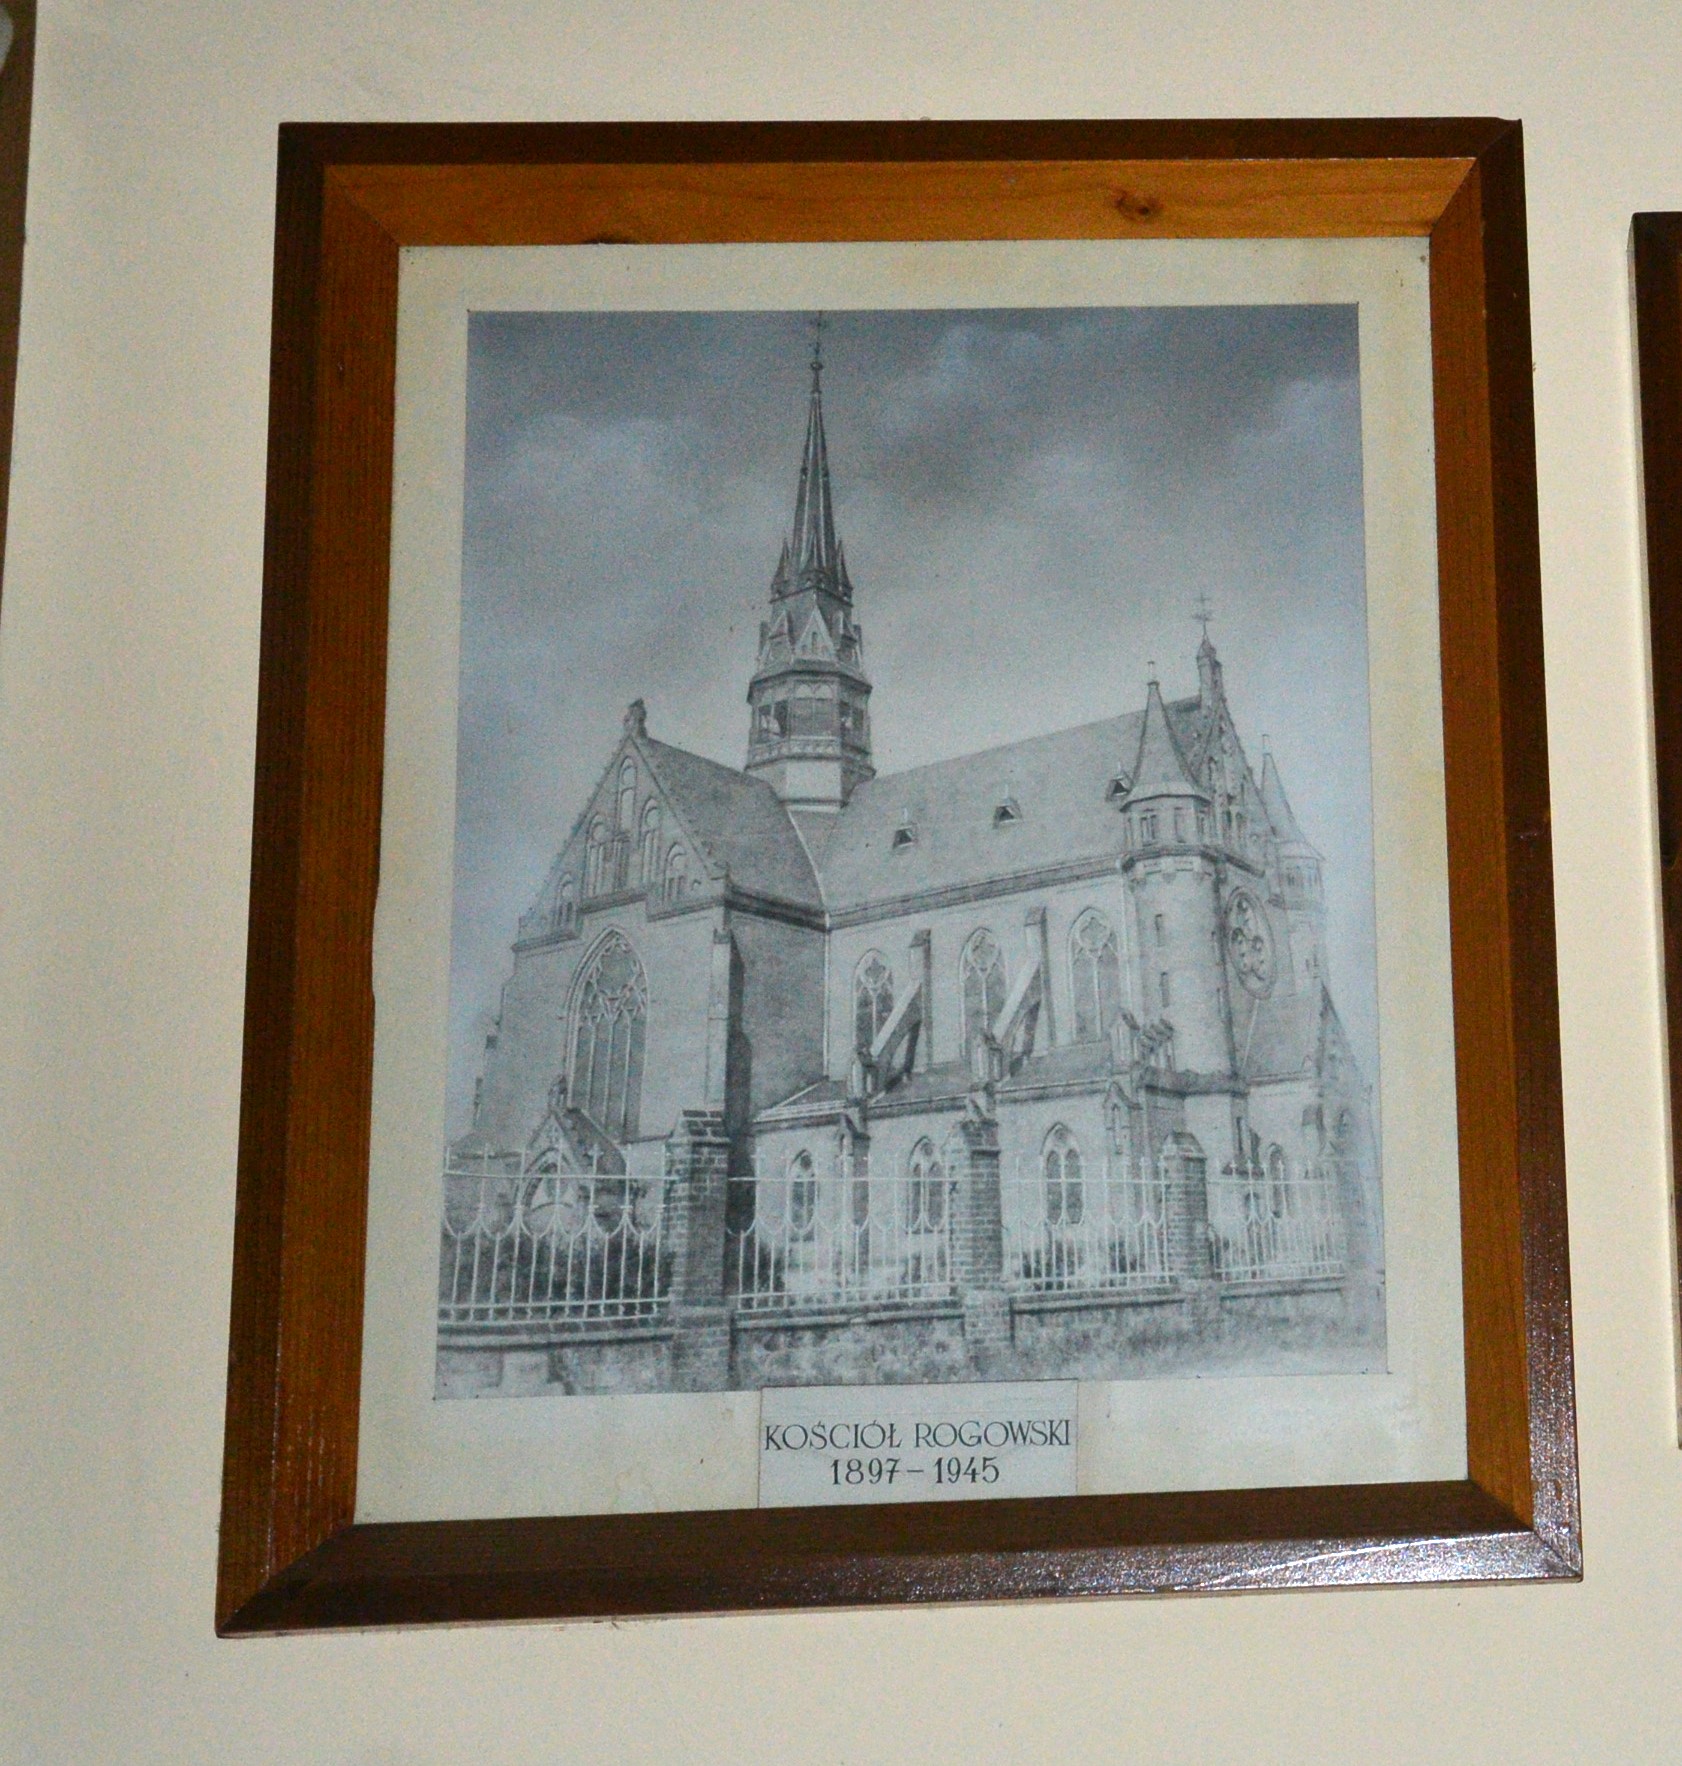 Kościół rogowski w latach 1897 - 1945. Obraz, który znajduje się w przedsionku kościoła.